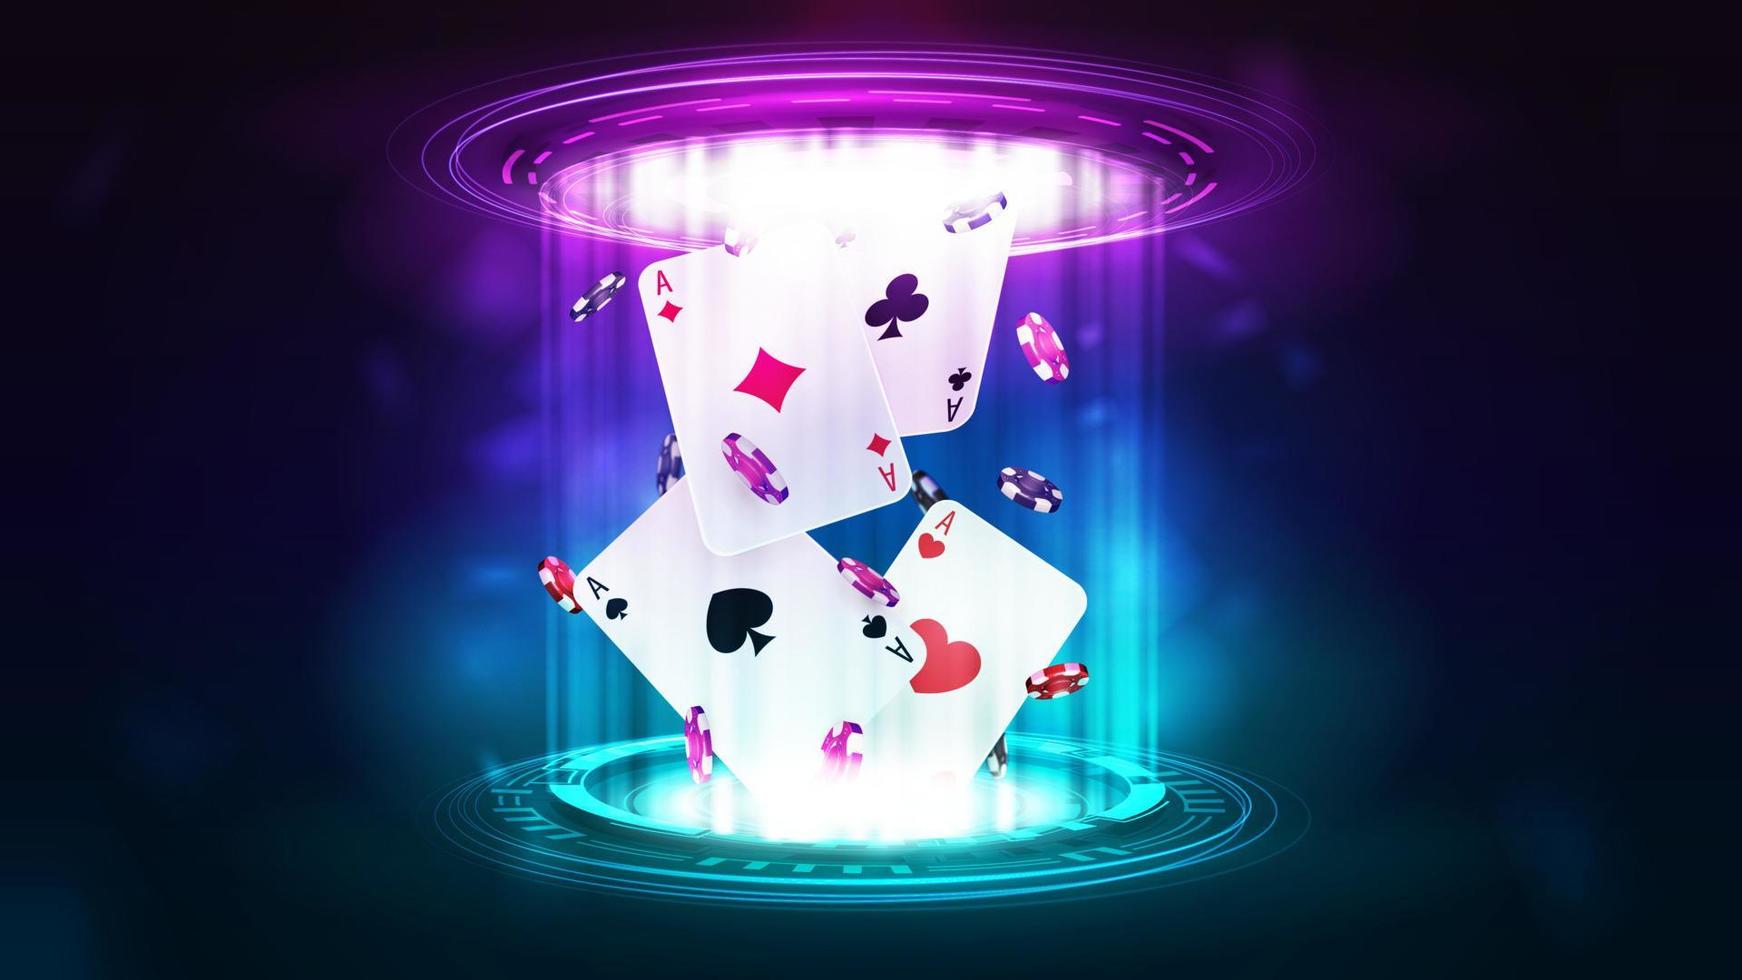 casino speelkaarten met pokerfiches in roze en blauw hologram van digitale ringen in donkere lege scène vector